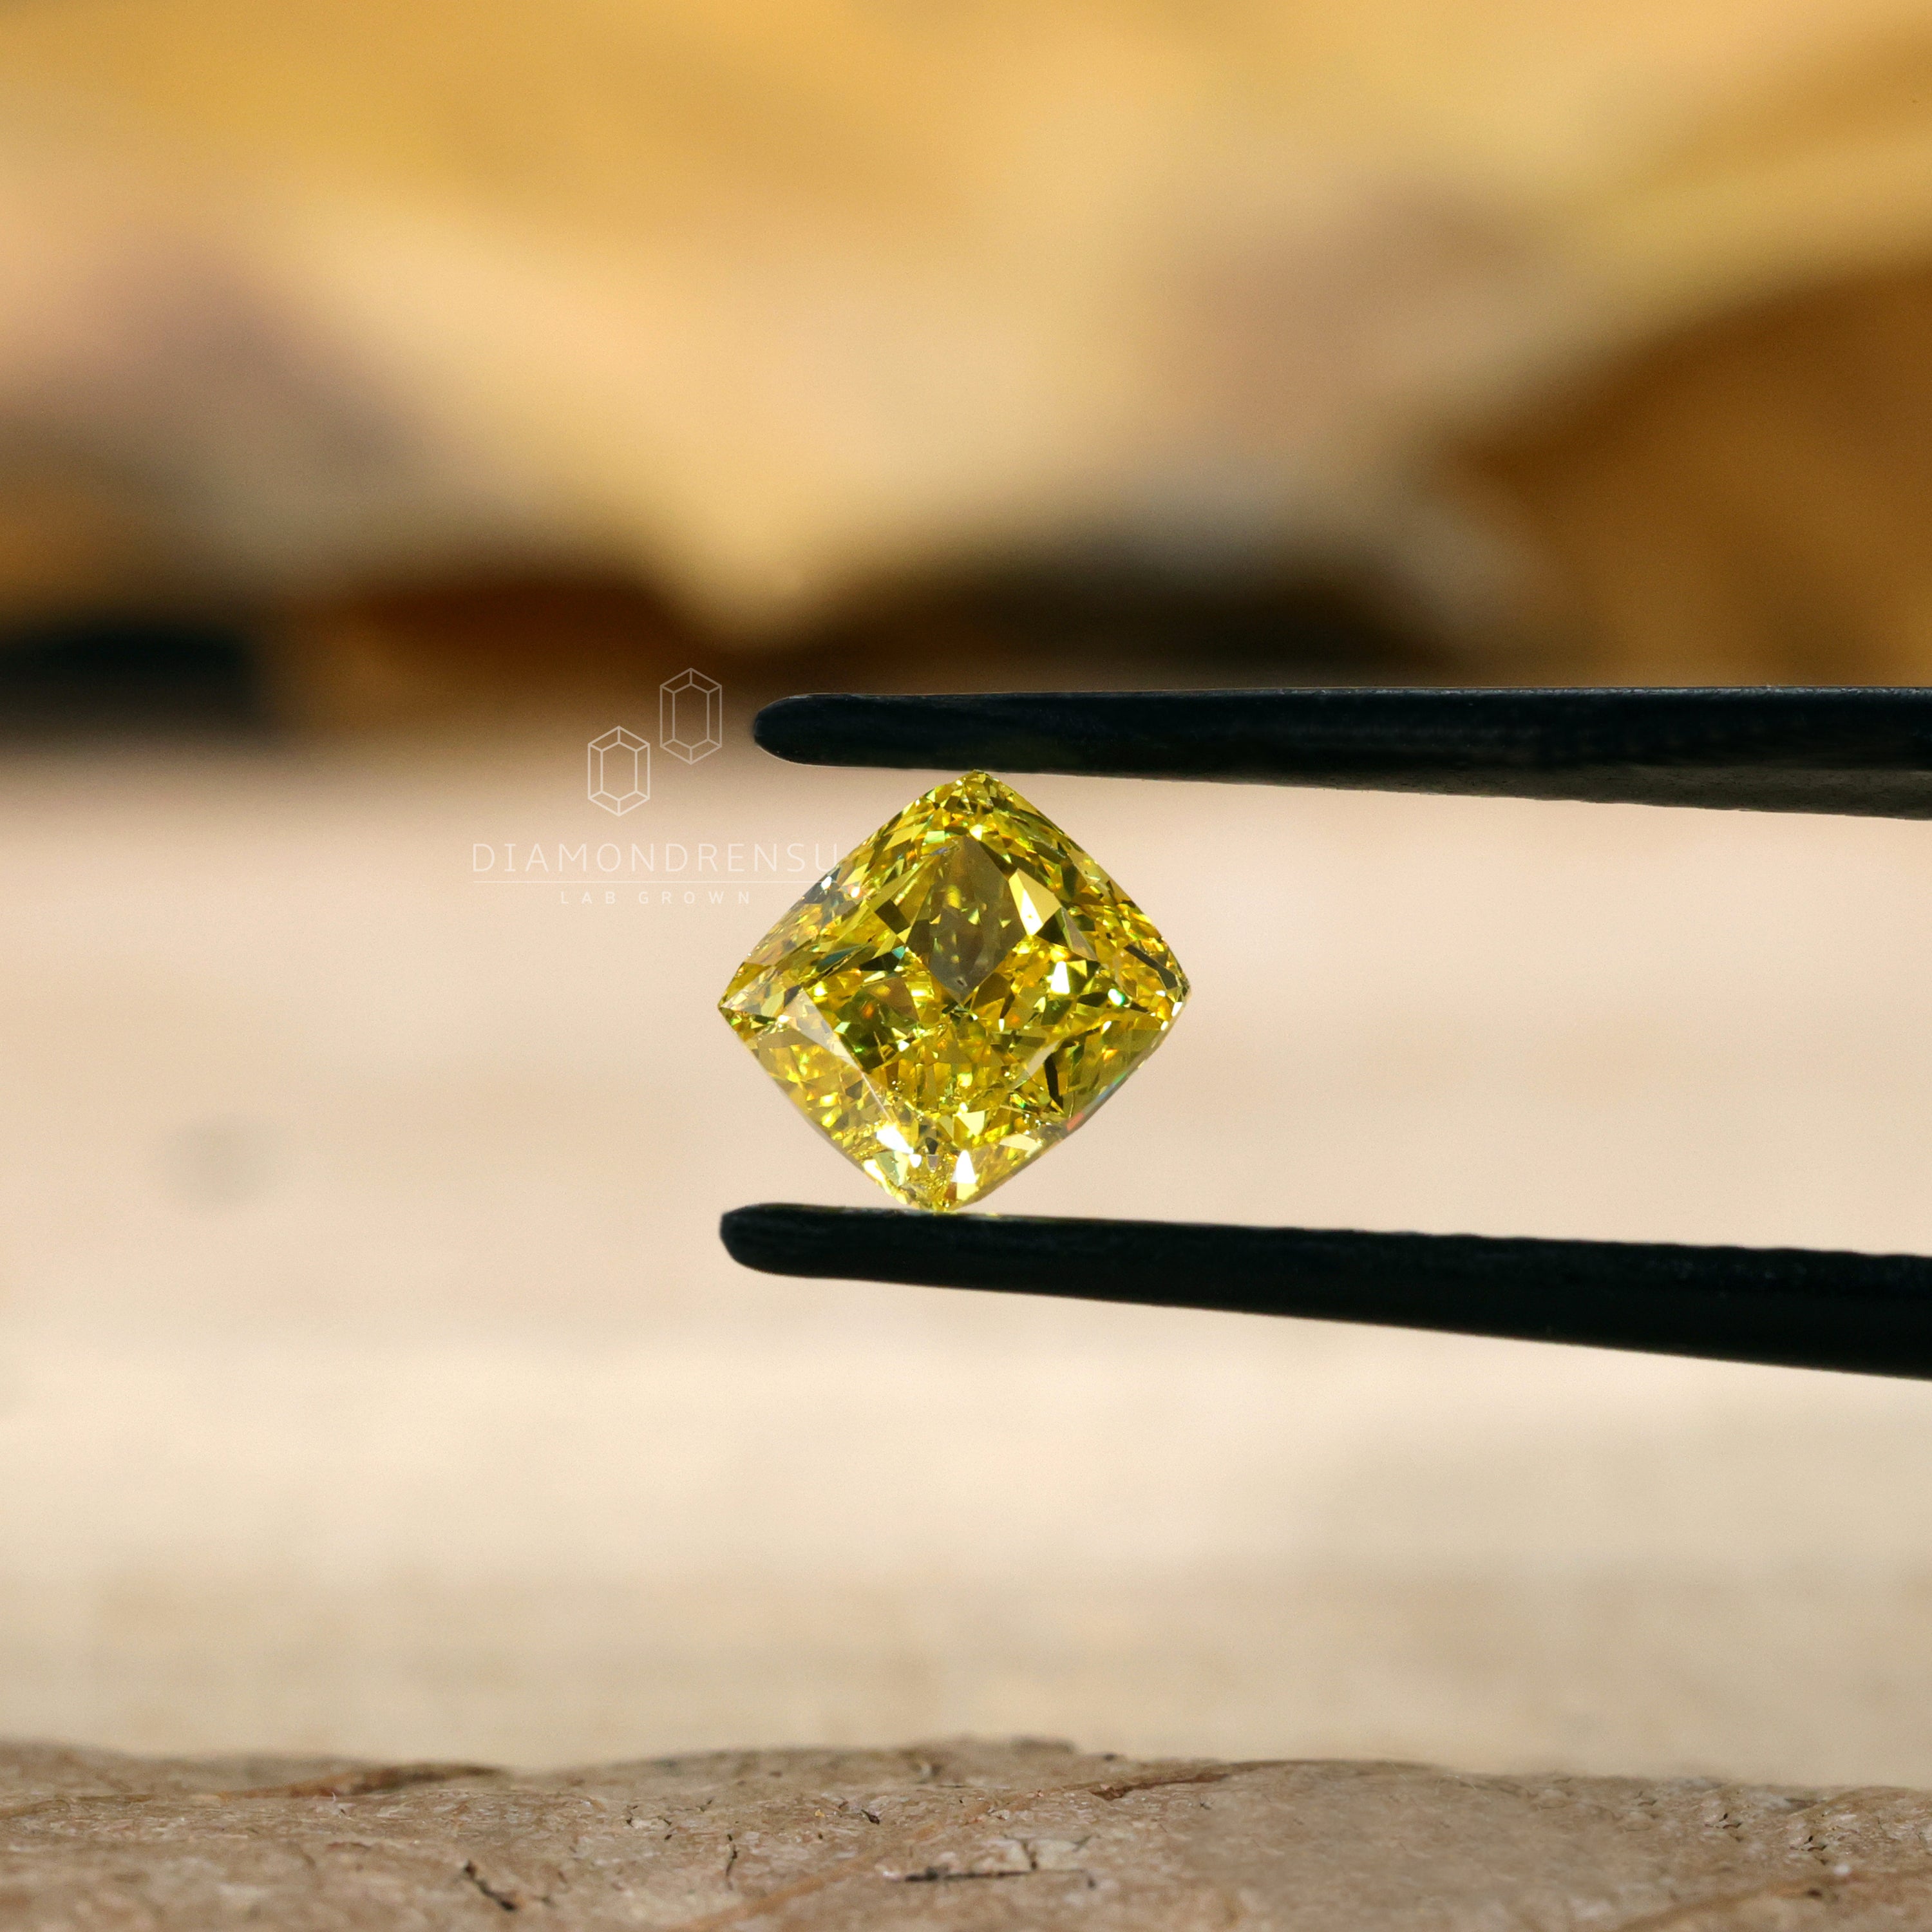 lab created diamond - diamondrensu 